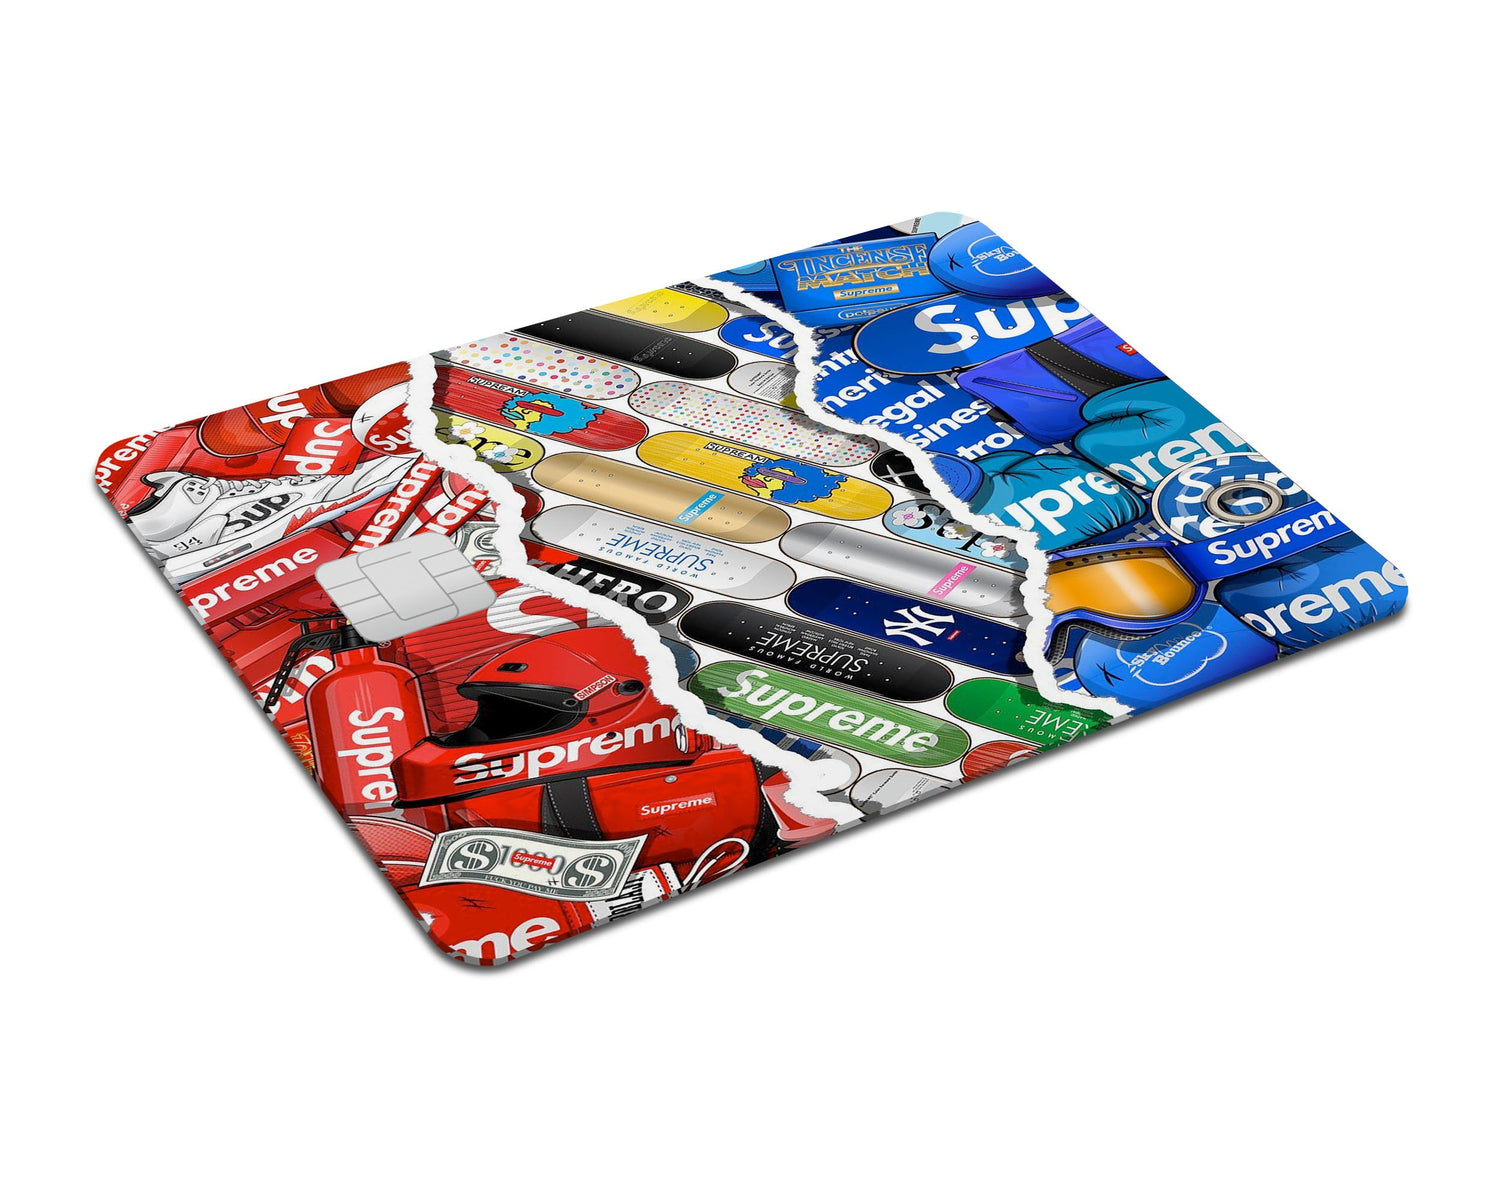 ATM card skins